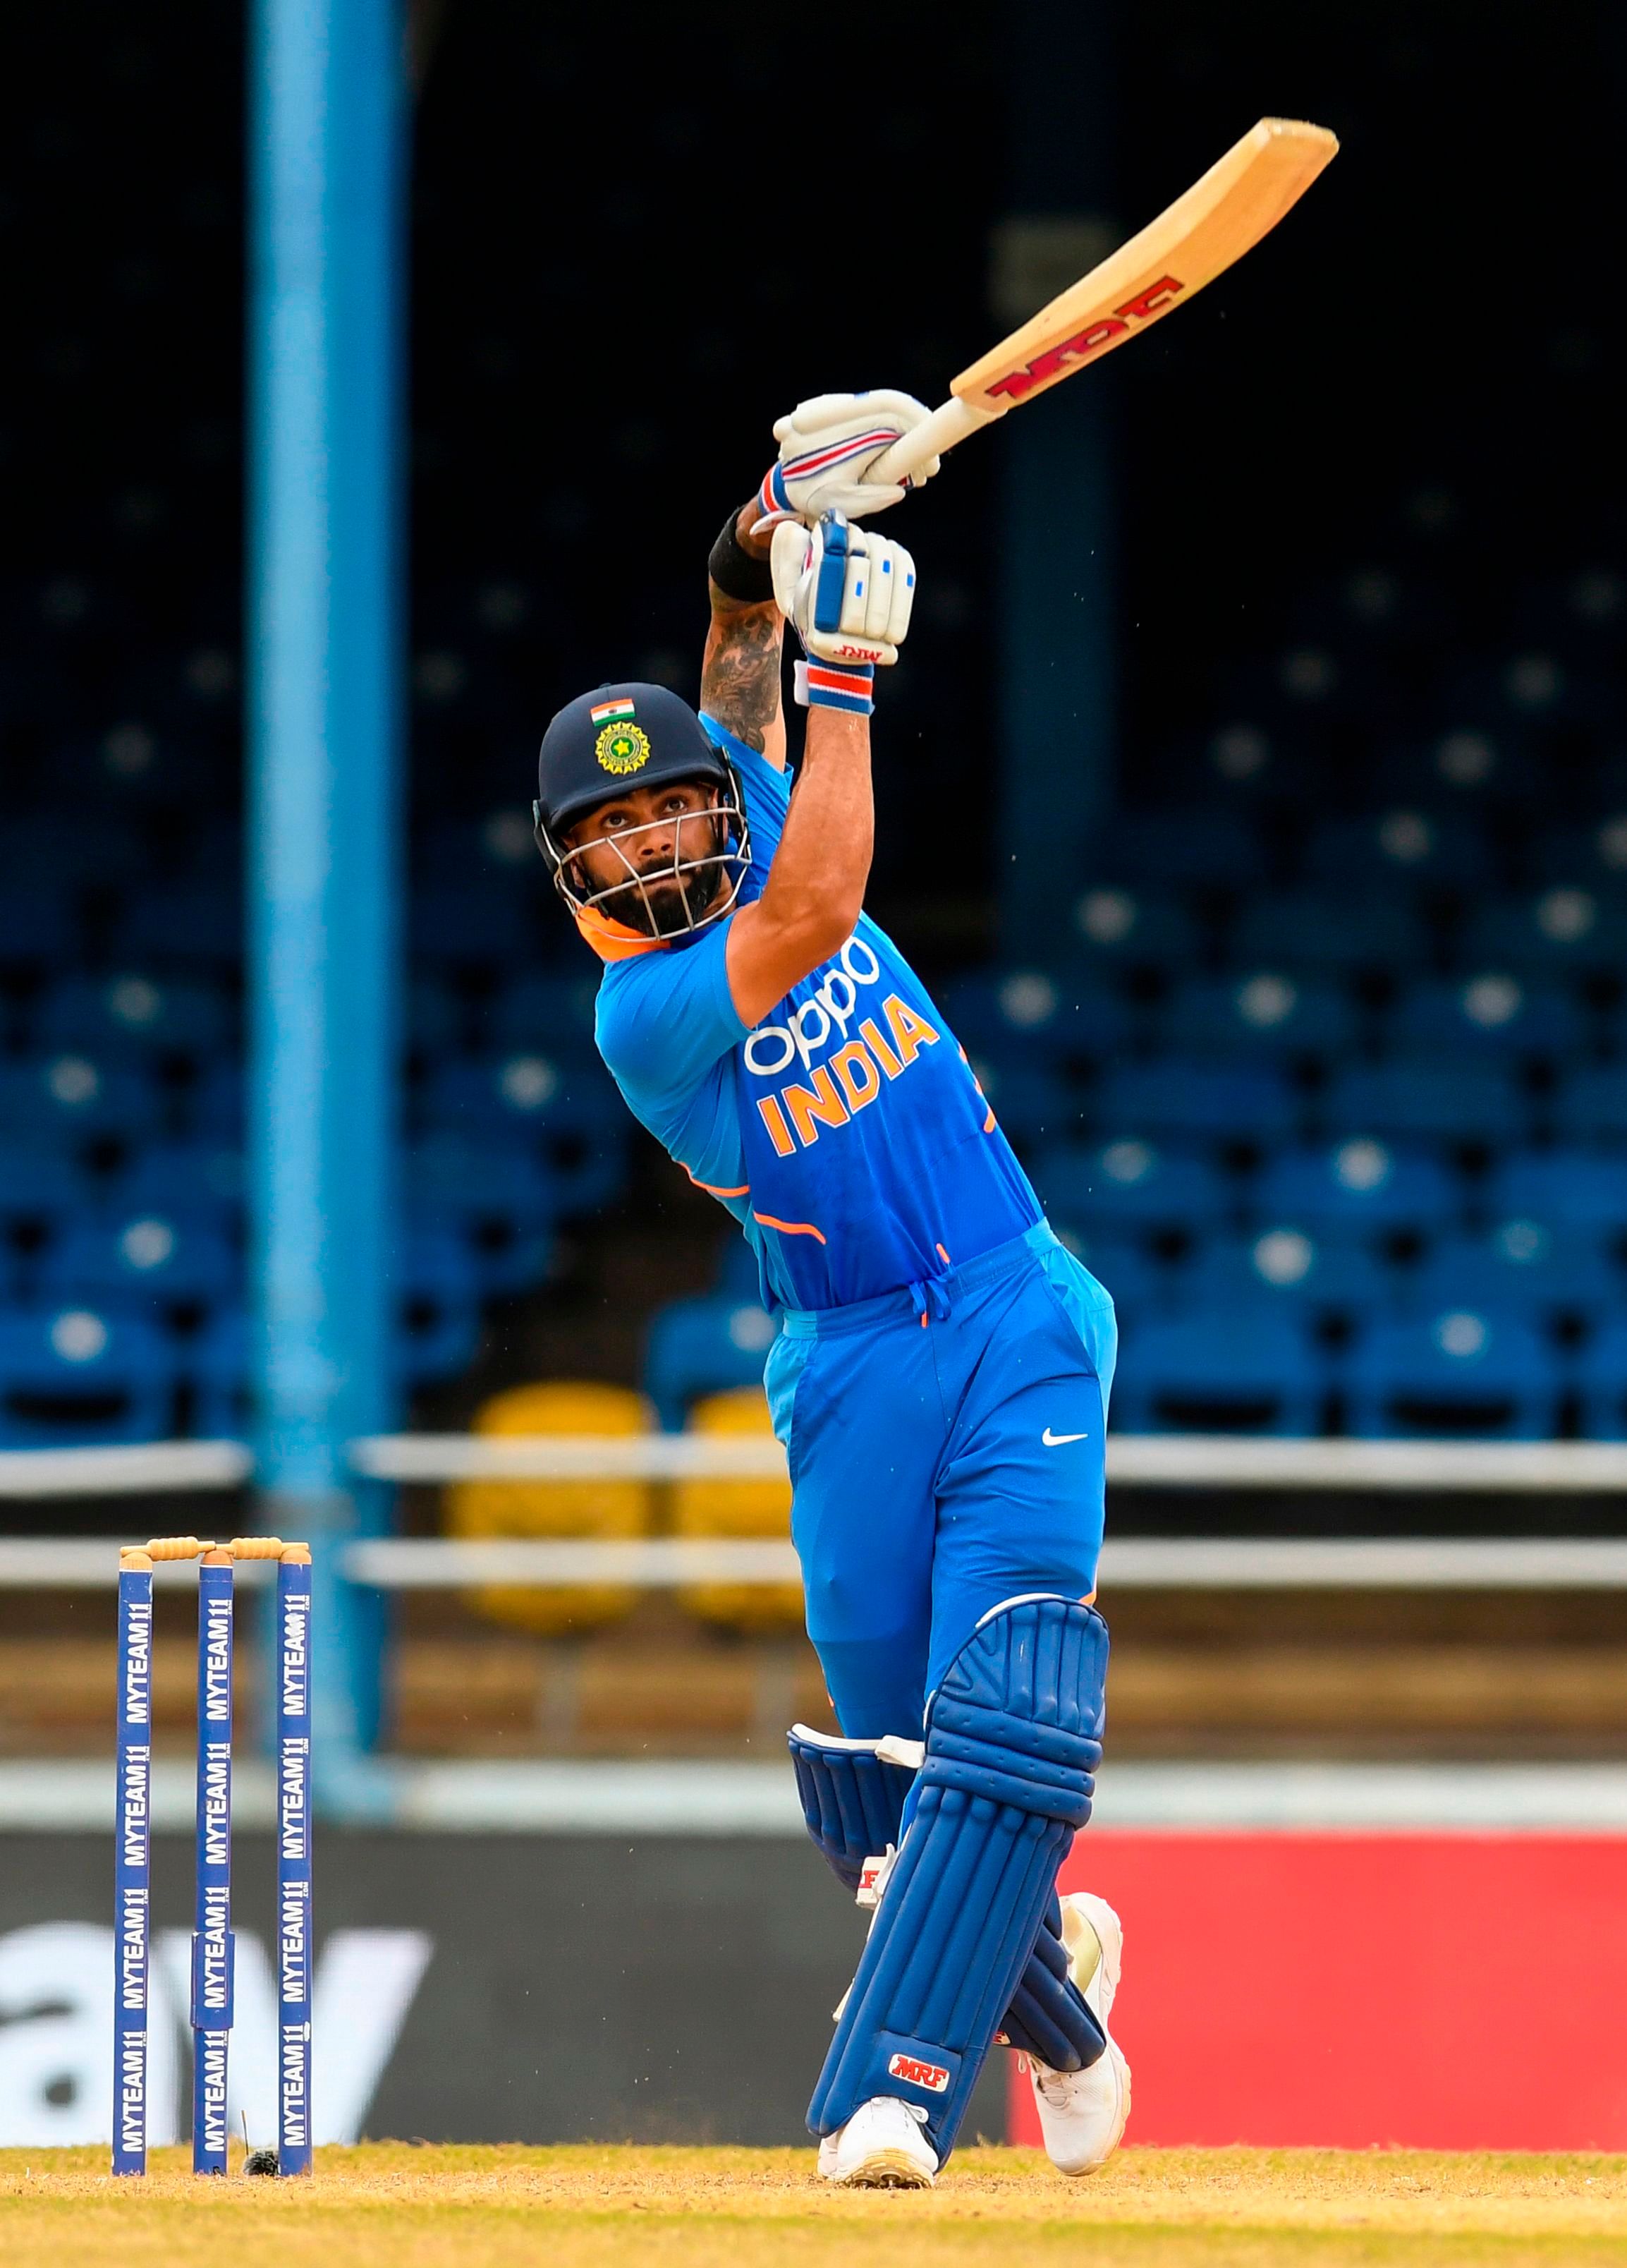 Kohli scored an unbeaten 114 to take India to a series win (AFP Photo)